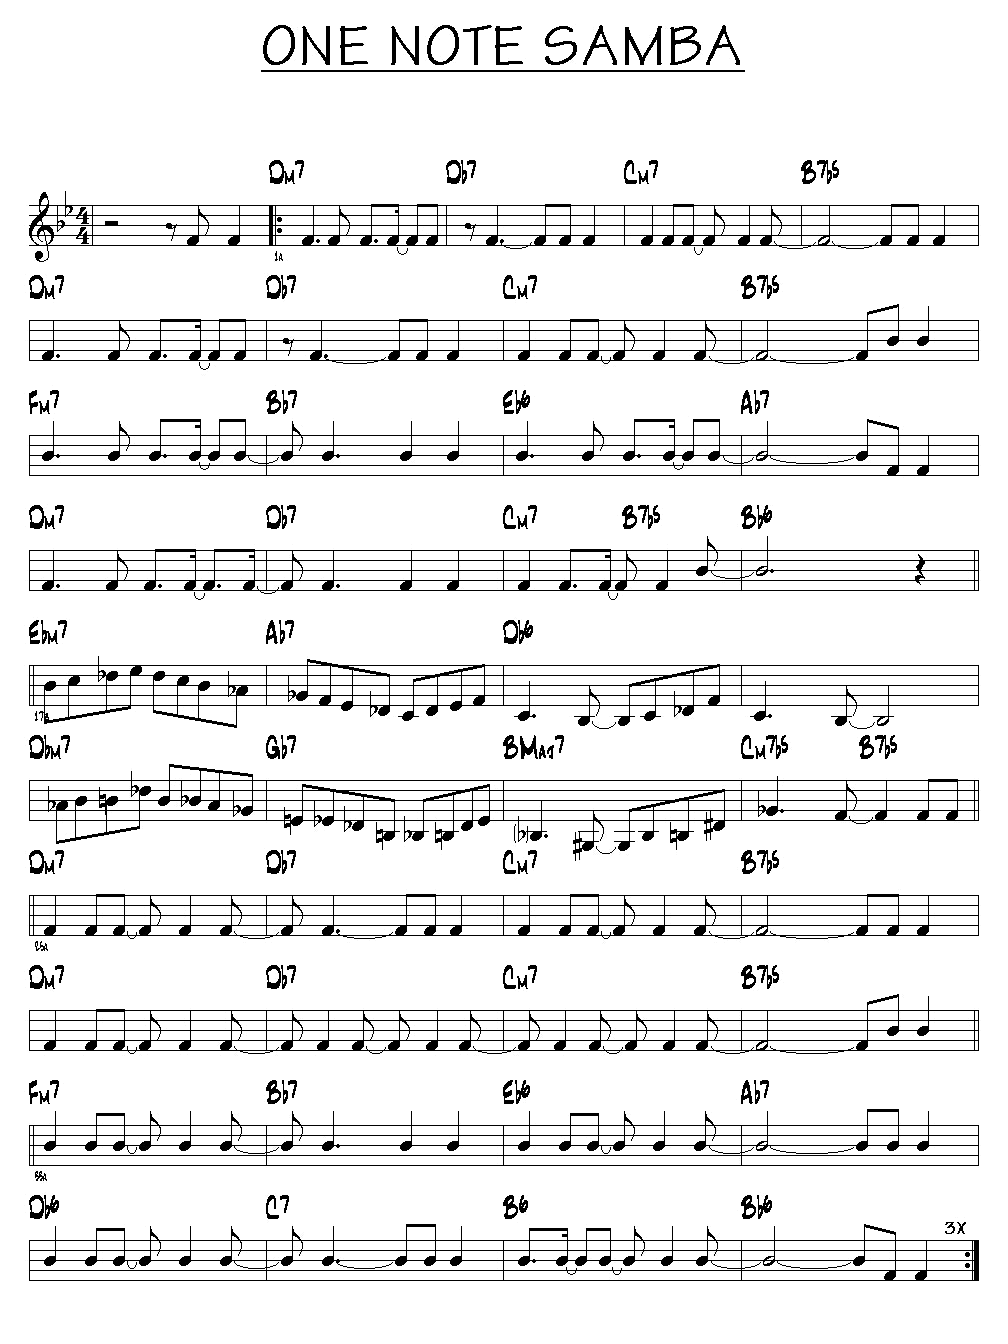 Partition One note samba piano guitare